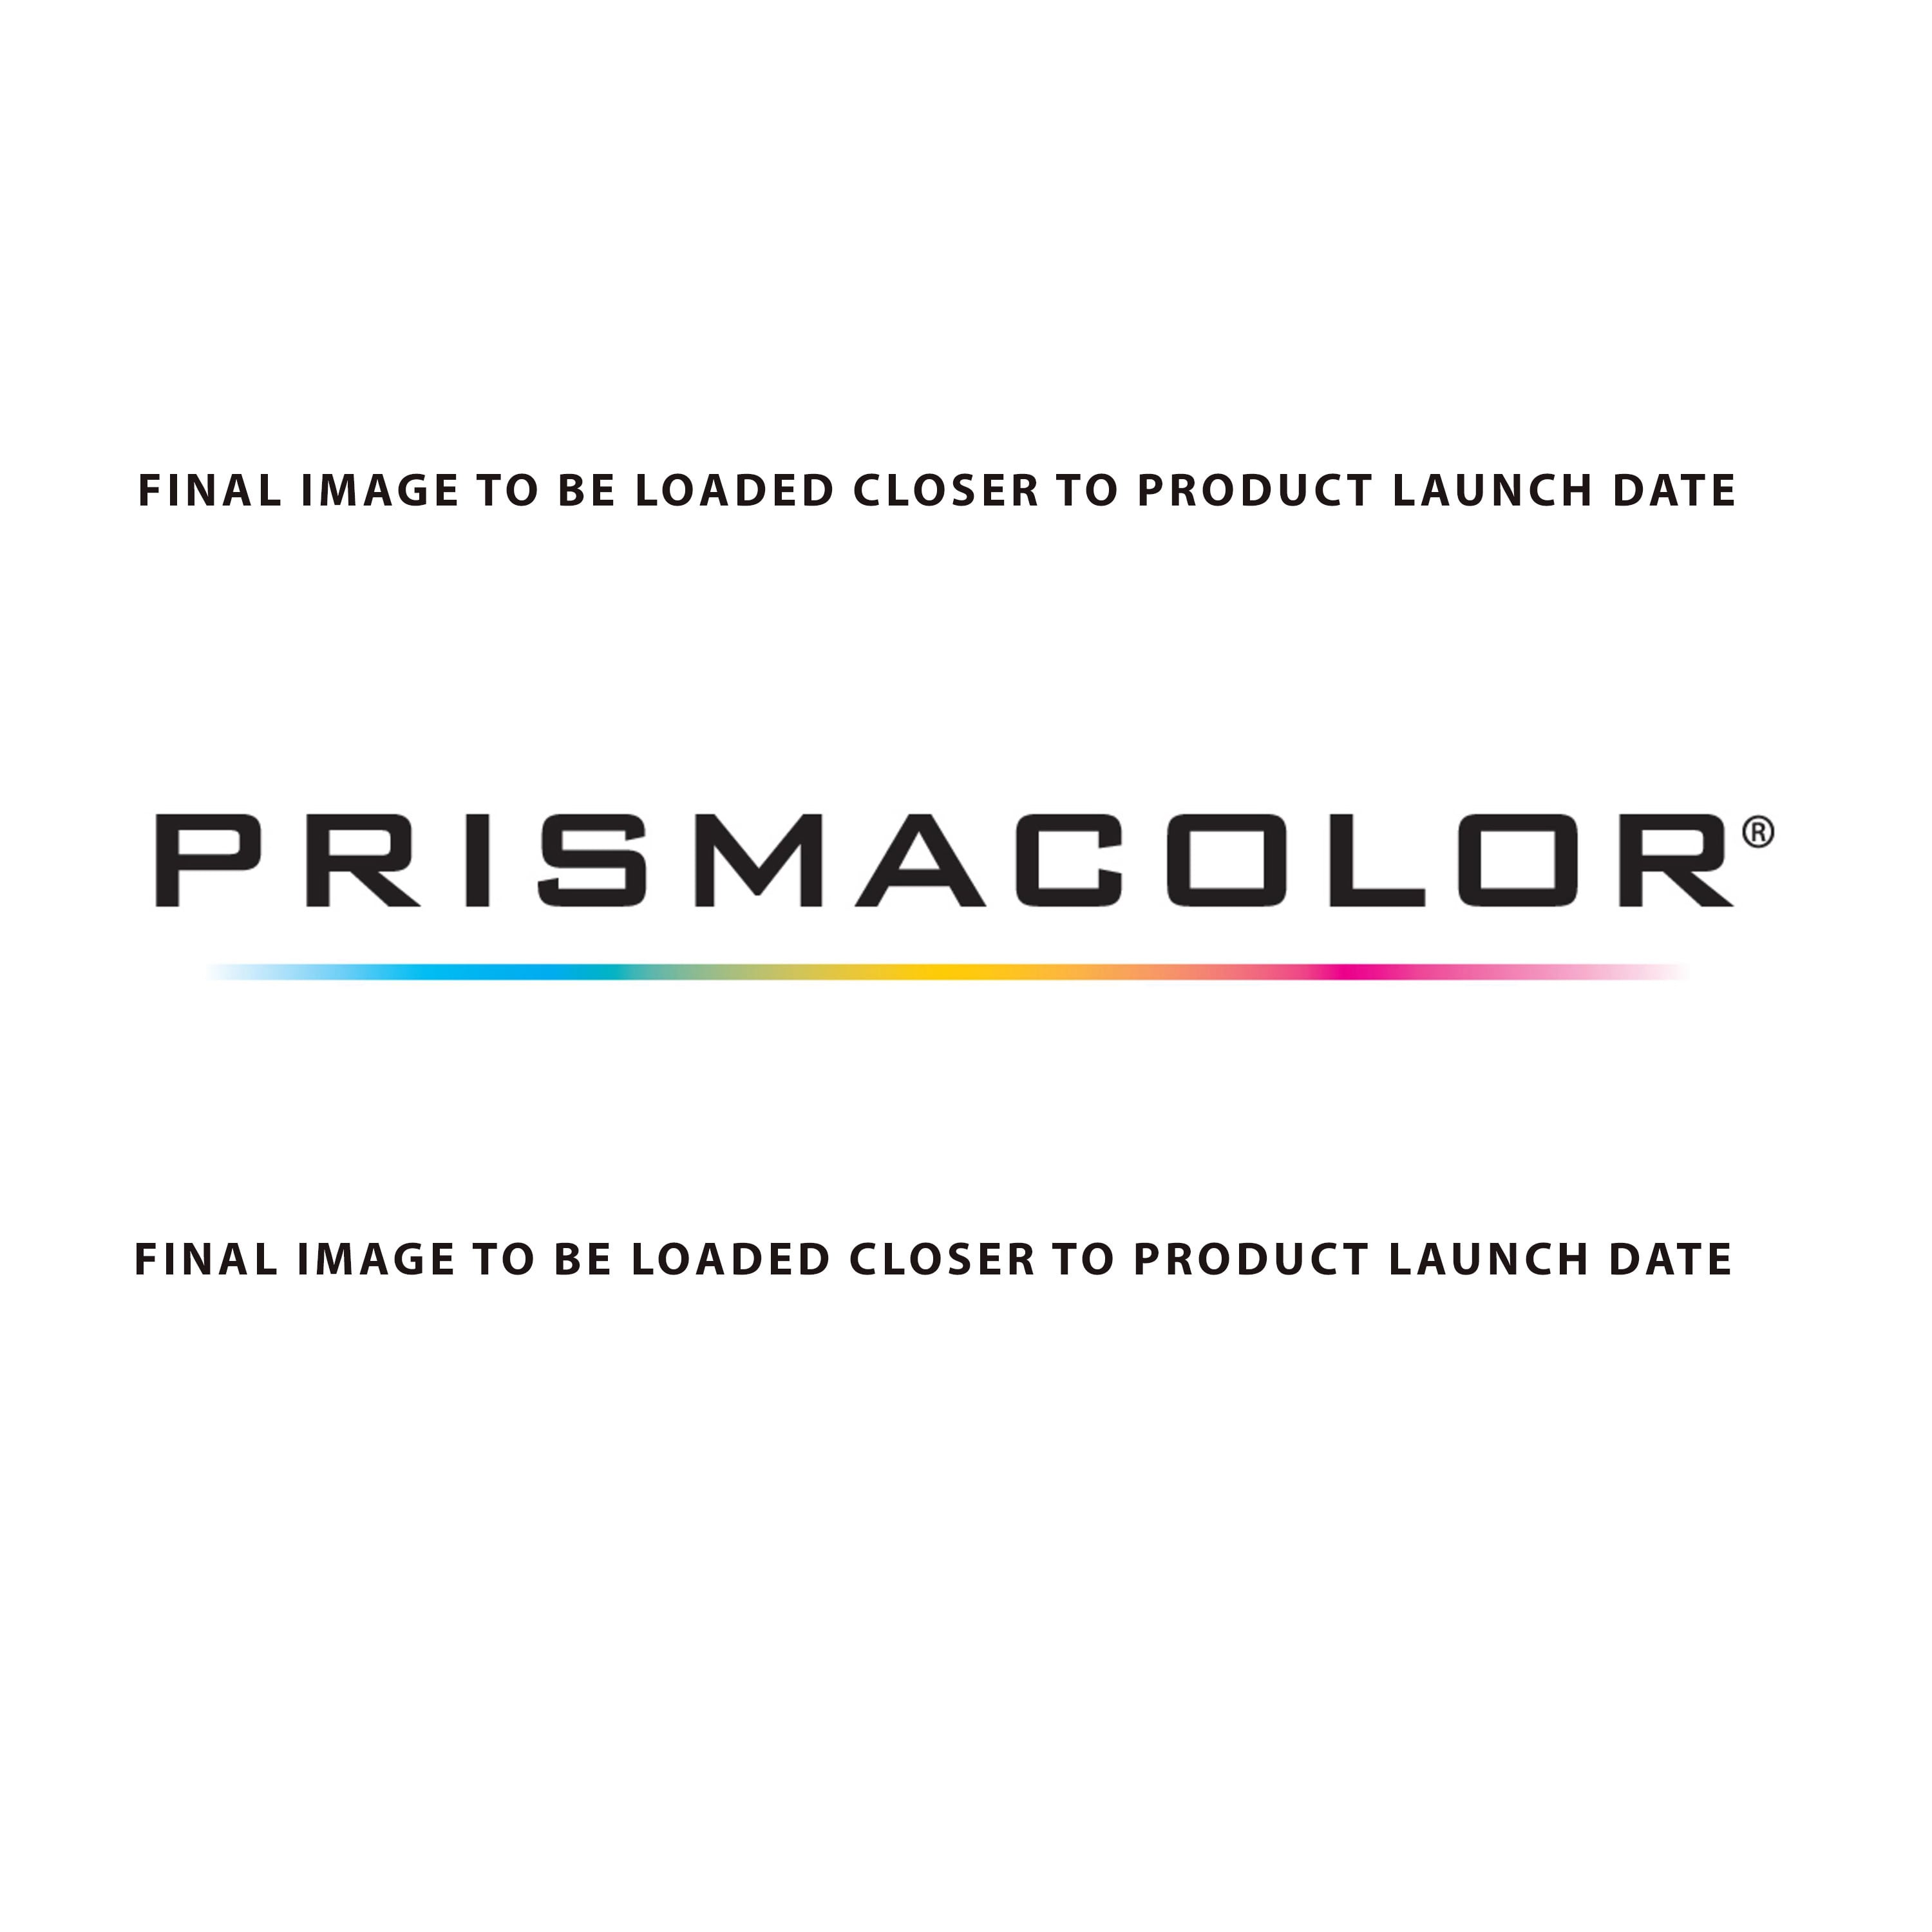 Prismacolor® Premier® Soft Core Colored Pencil Set